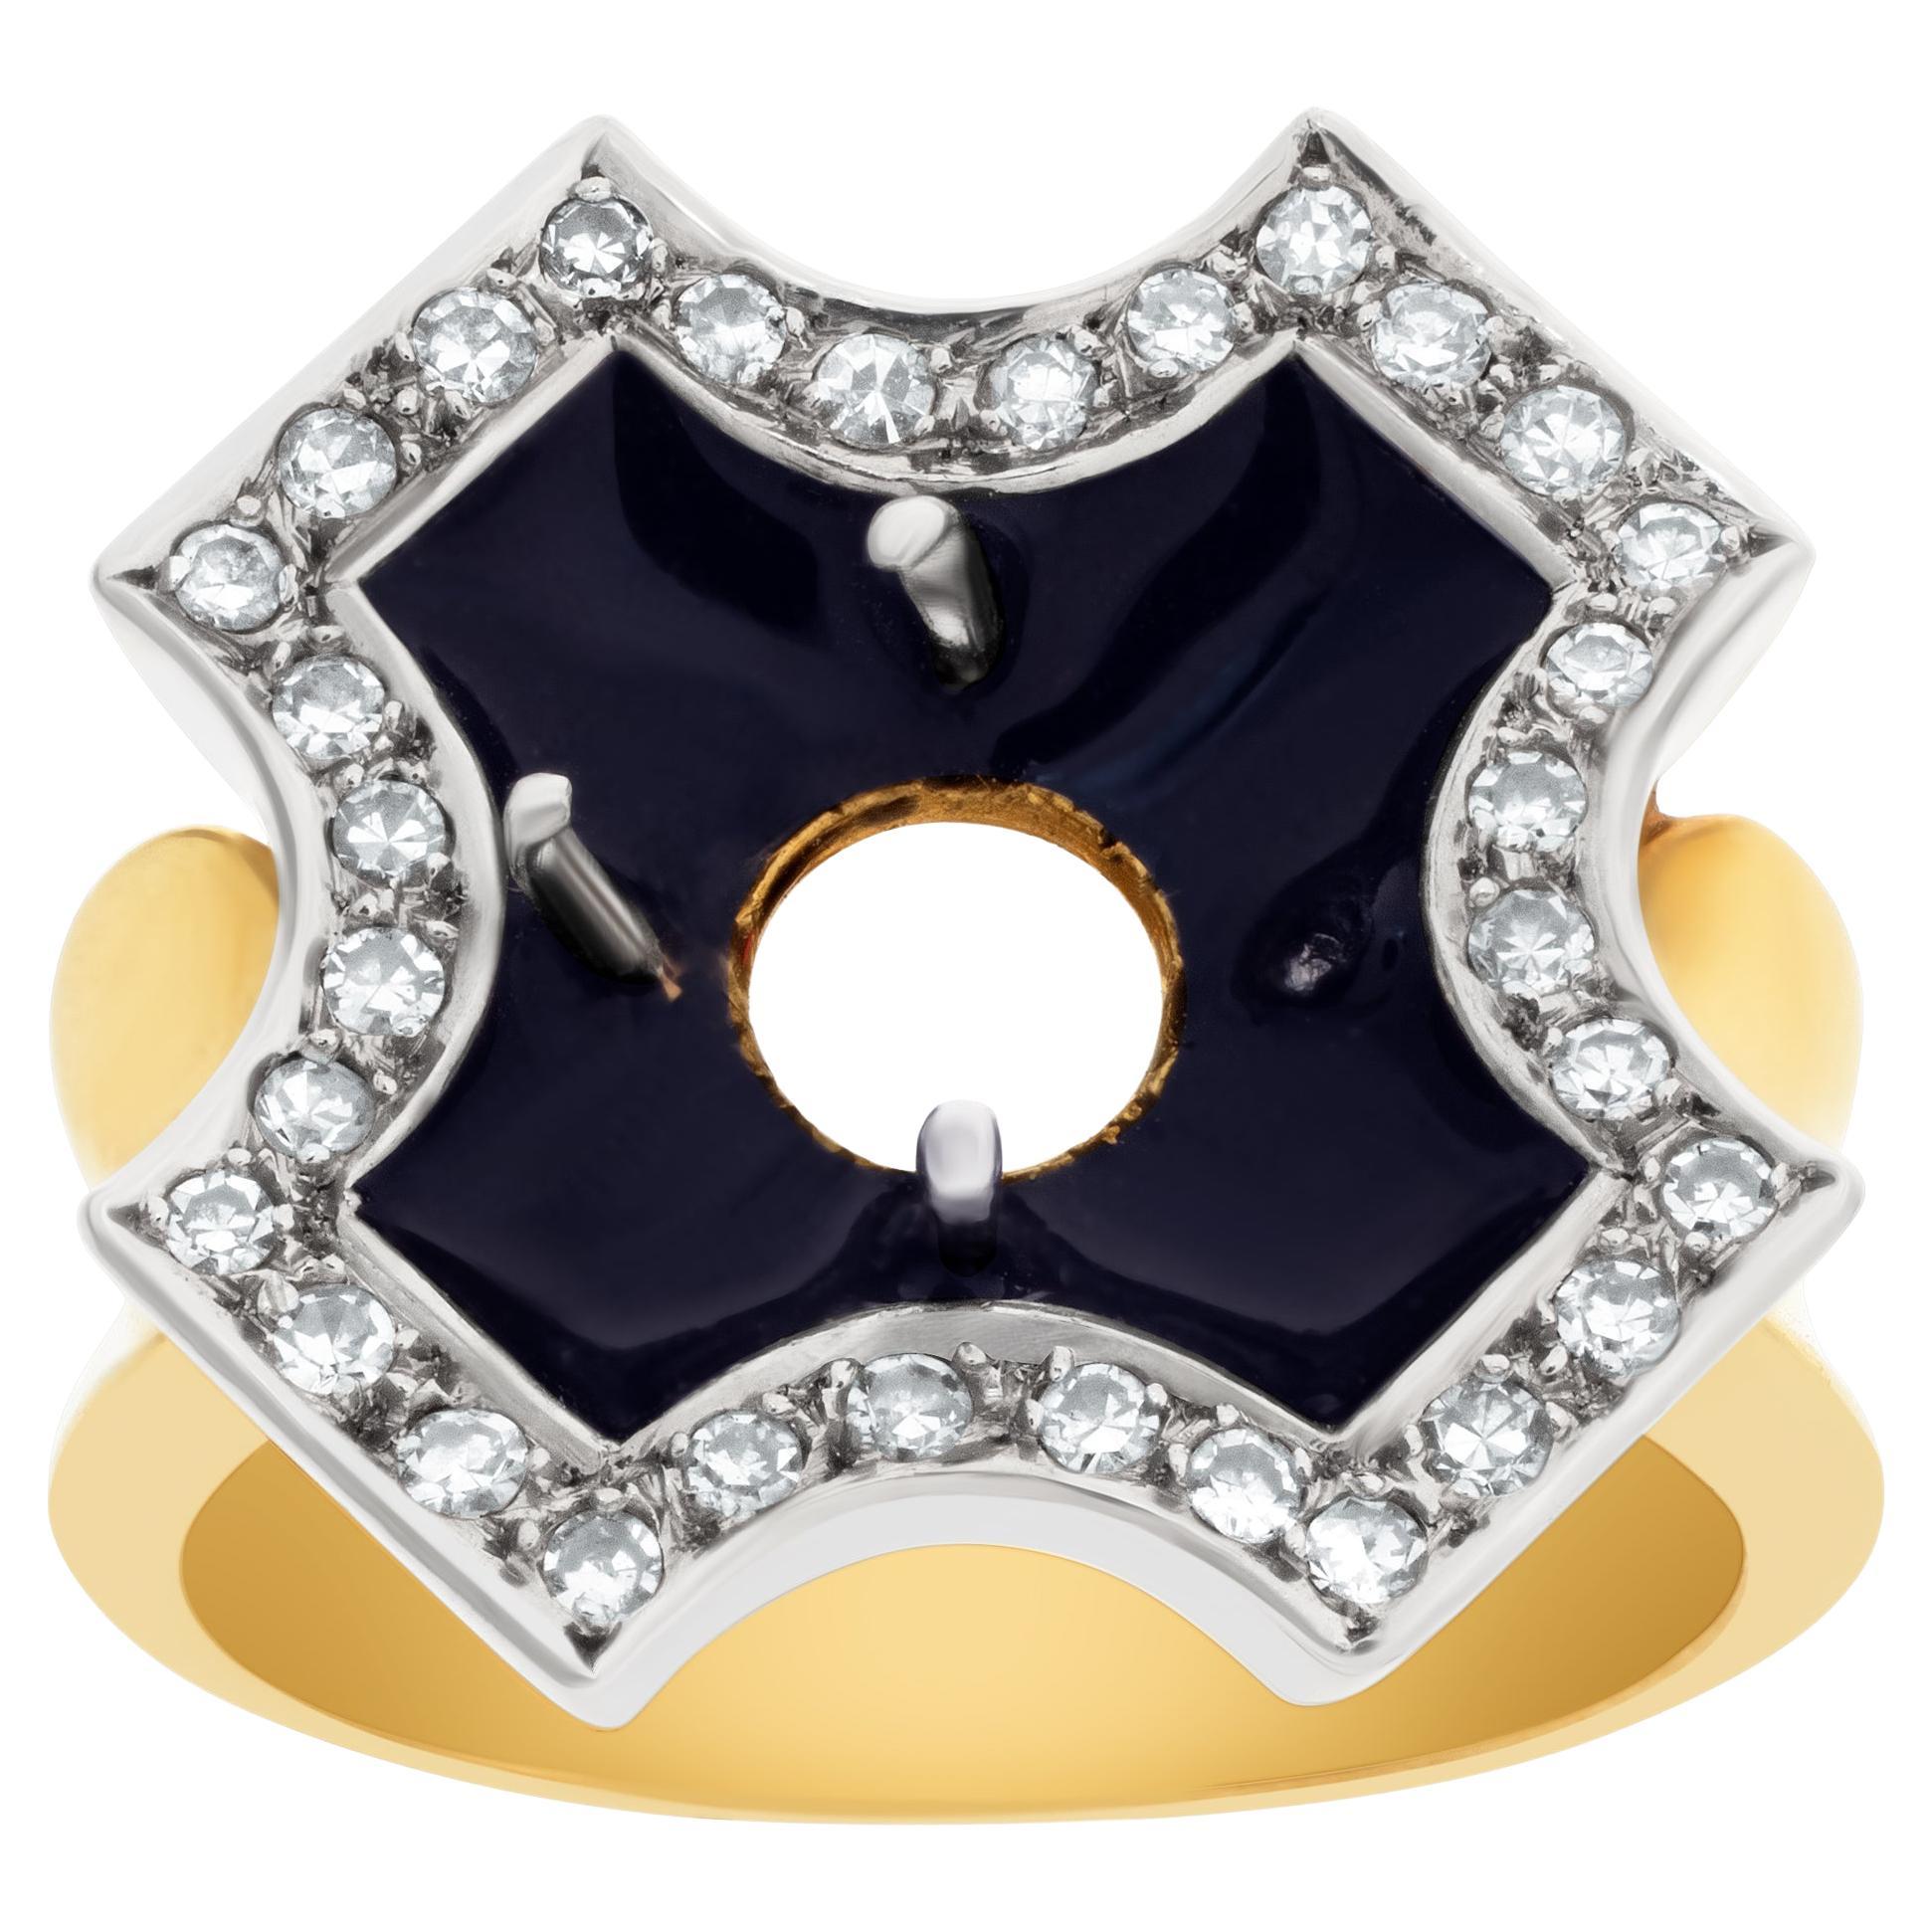 Black Enamel Maltese Cross Design Setting Ring in 18k Yellow Gold